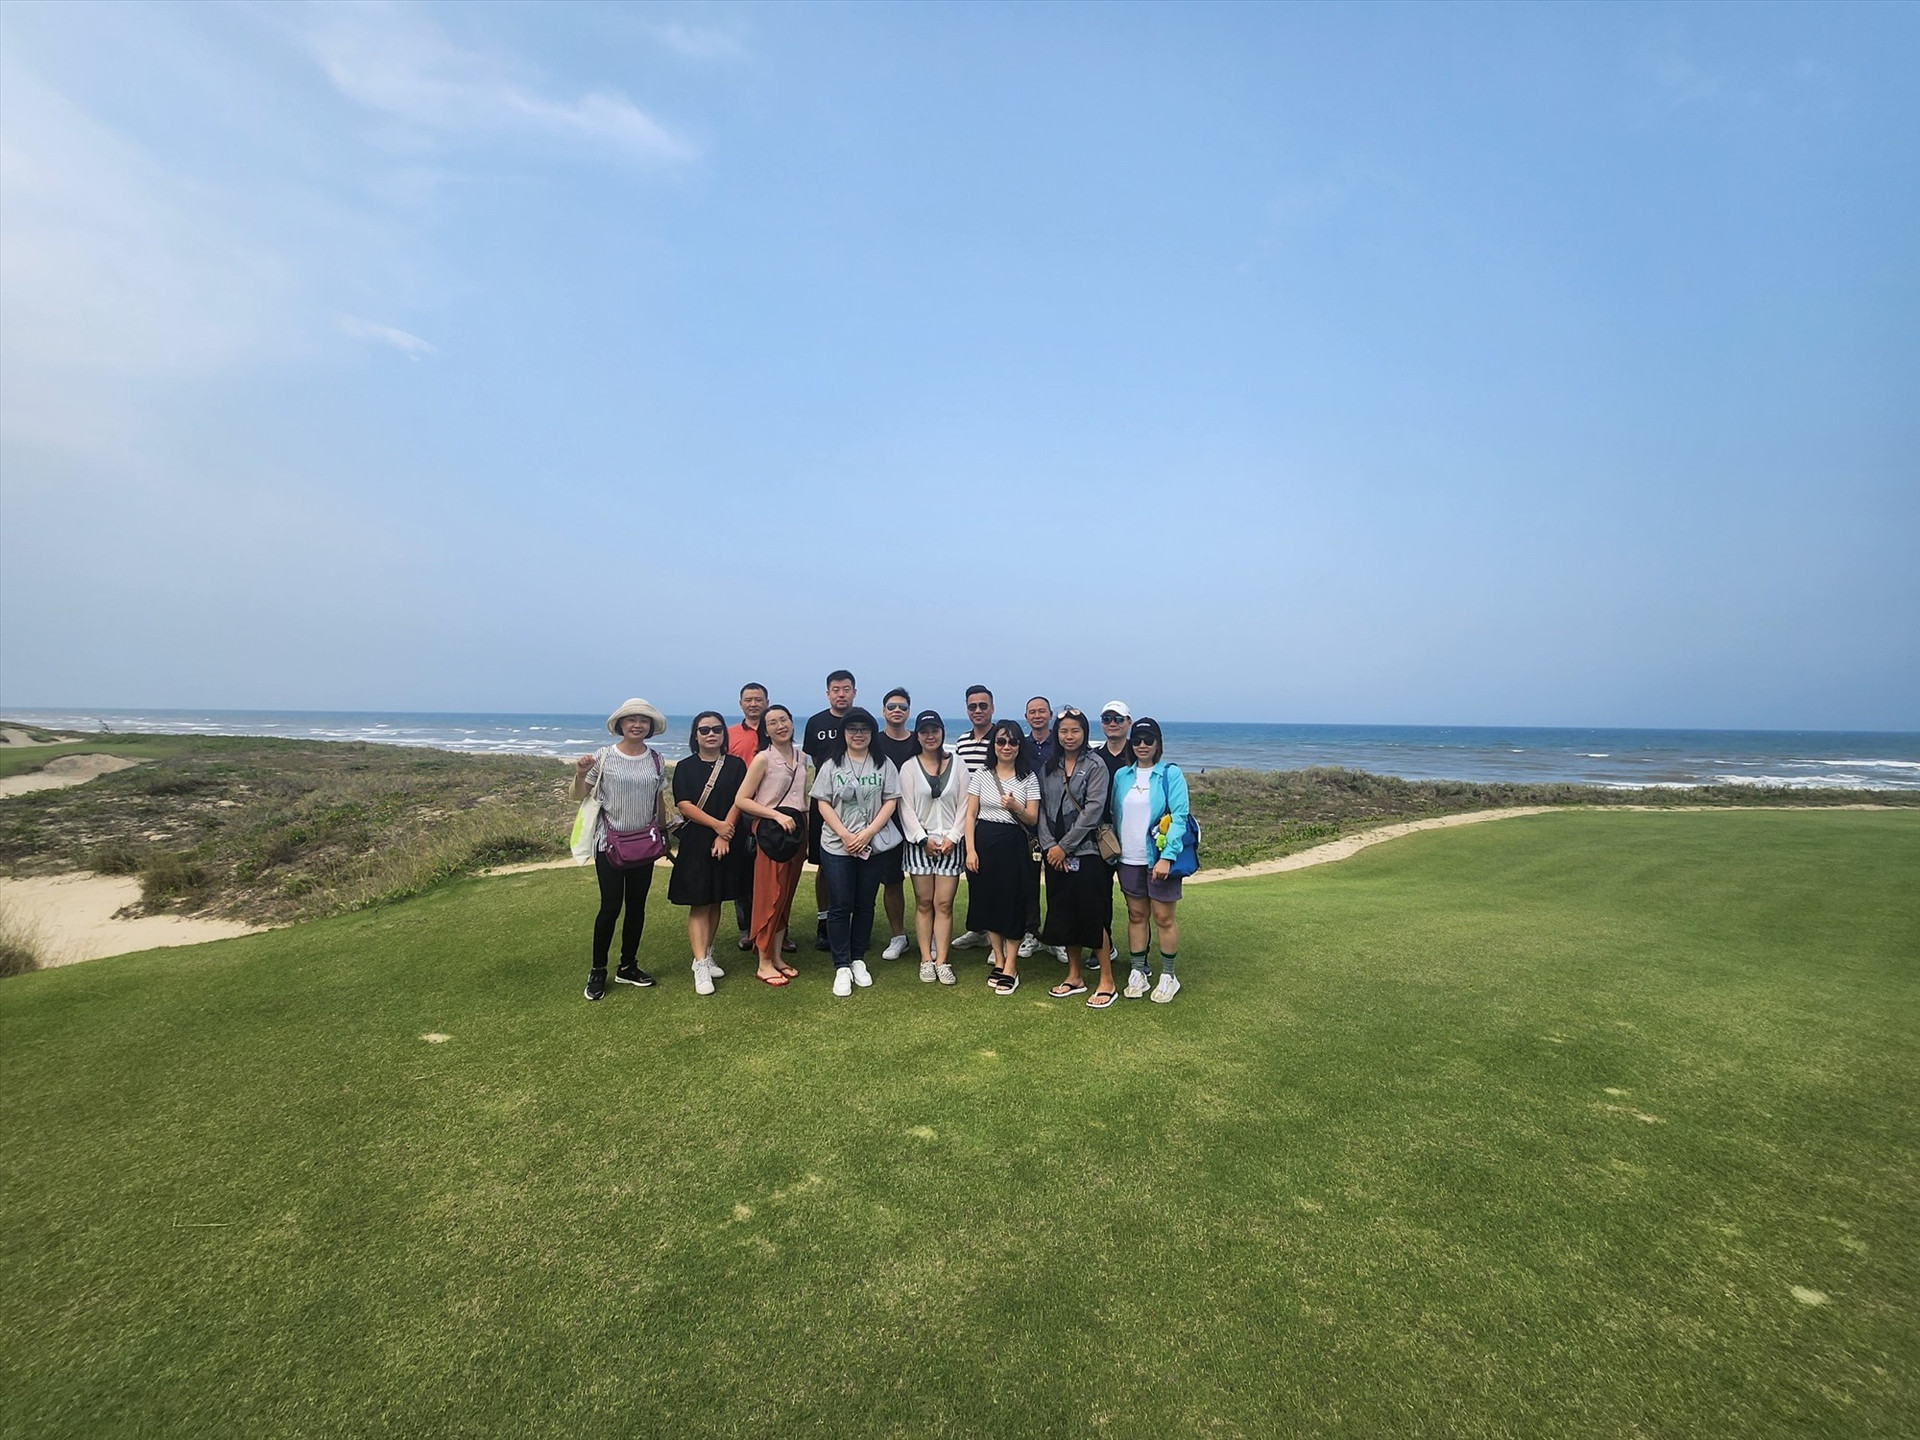 Đoàn Famtour khảo sát du lịch golf tại Hoiana. Ảnh: Q.T